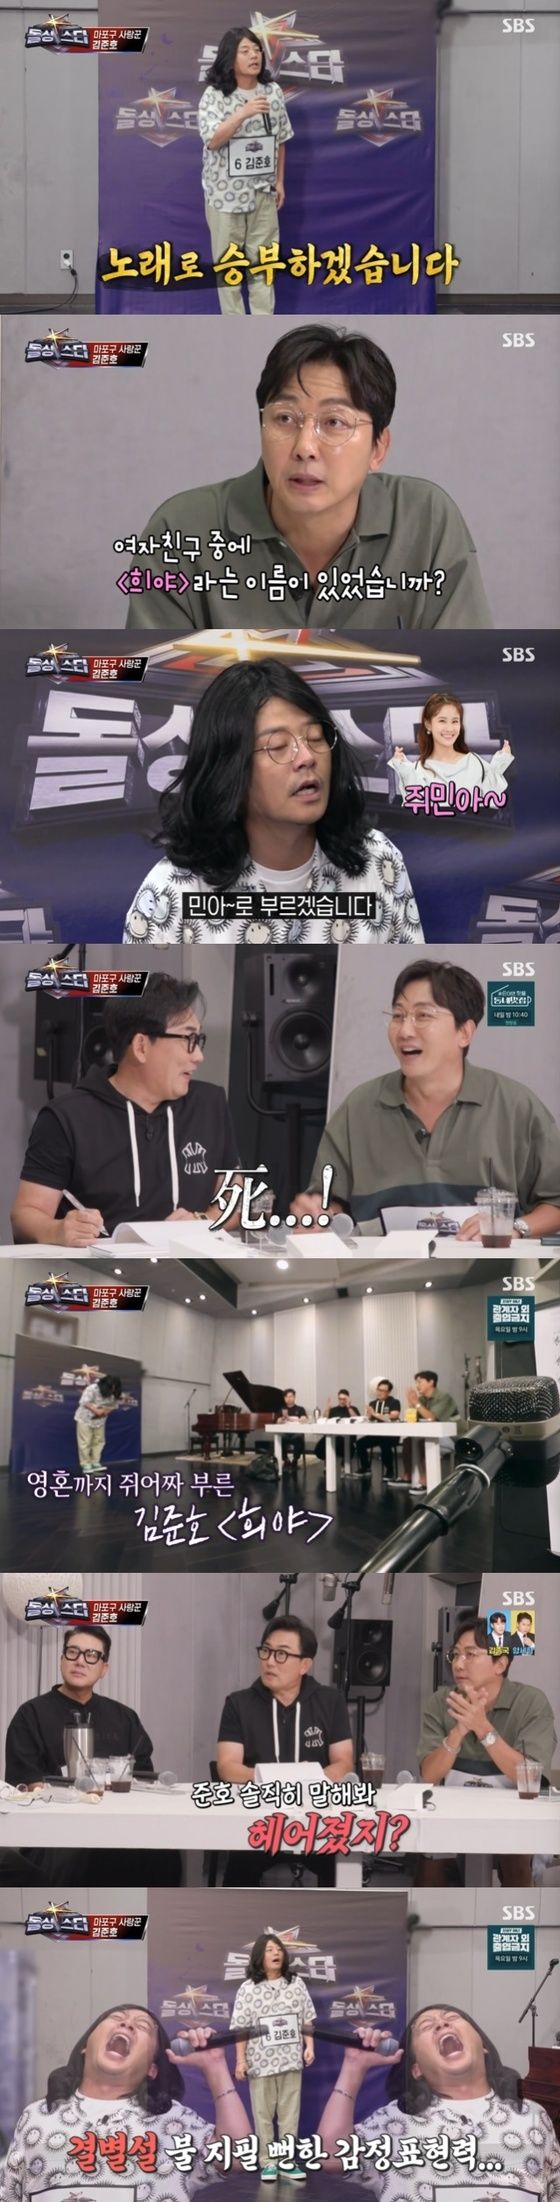 SBS '신발벗고 돌싱포맨' 캡처